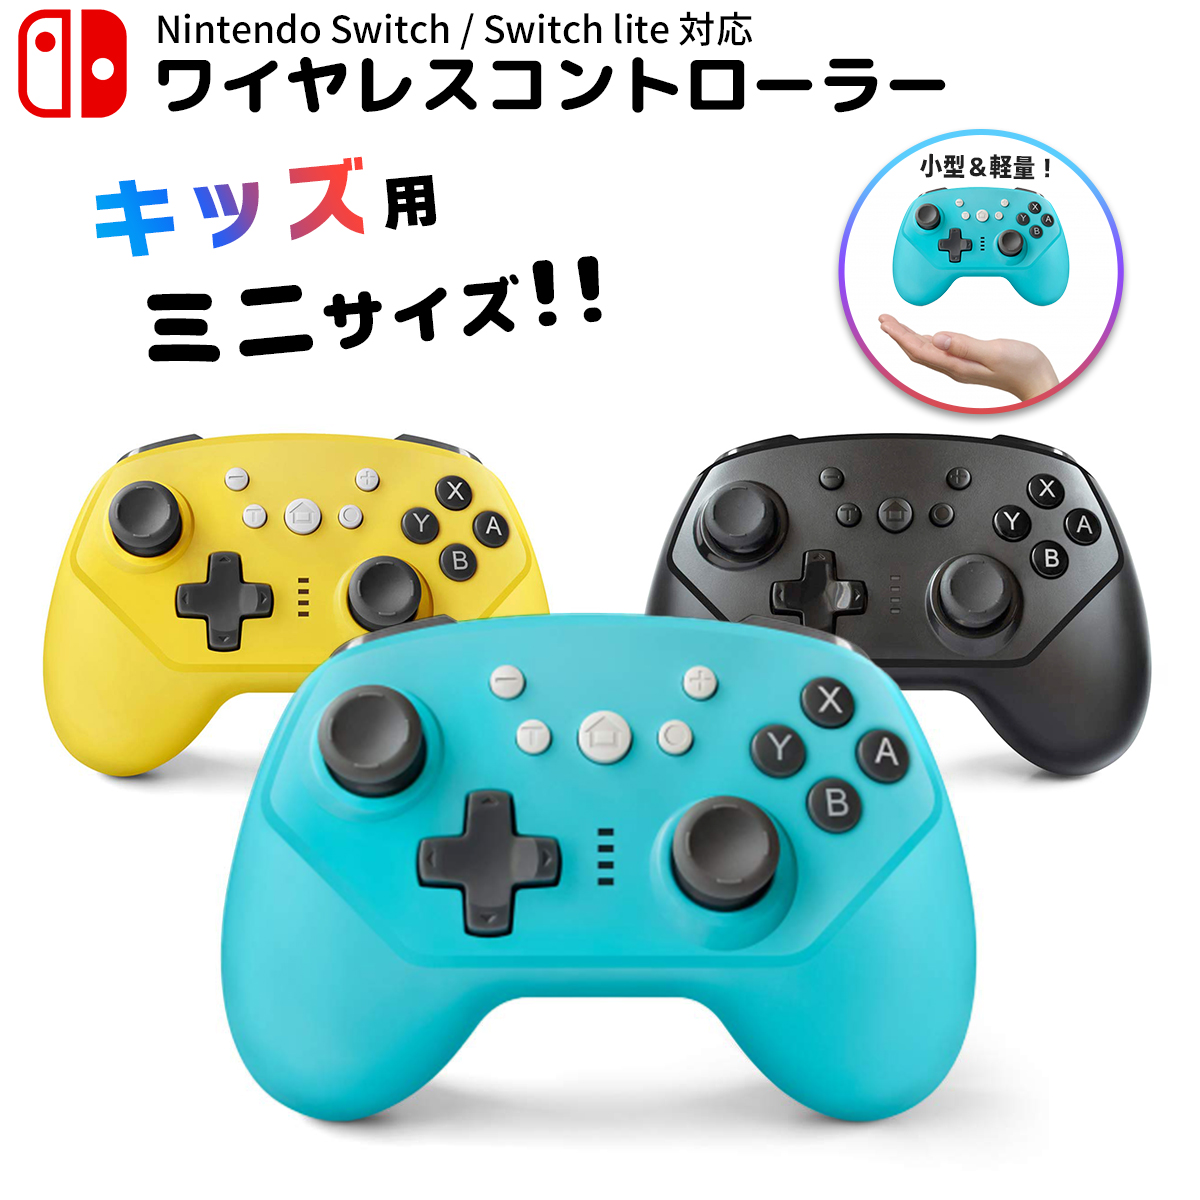 【楽天市場】【50%OFF券配布】Nintendo Switch / Switch lite コントローラー 任天堂 スイッチ ニンテンドー